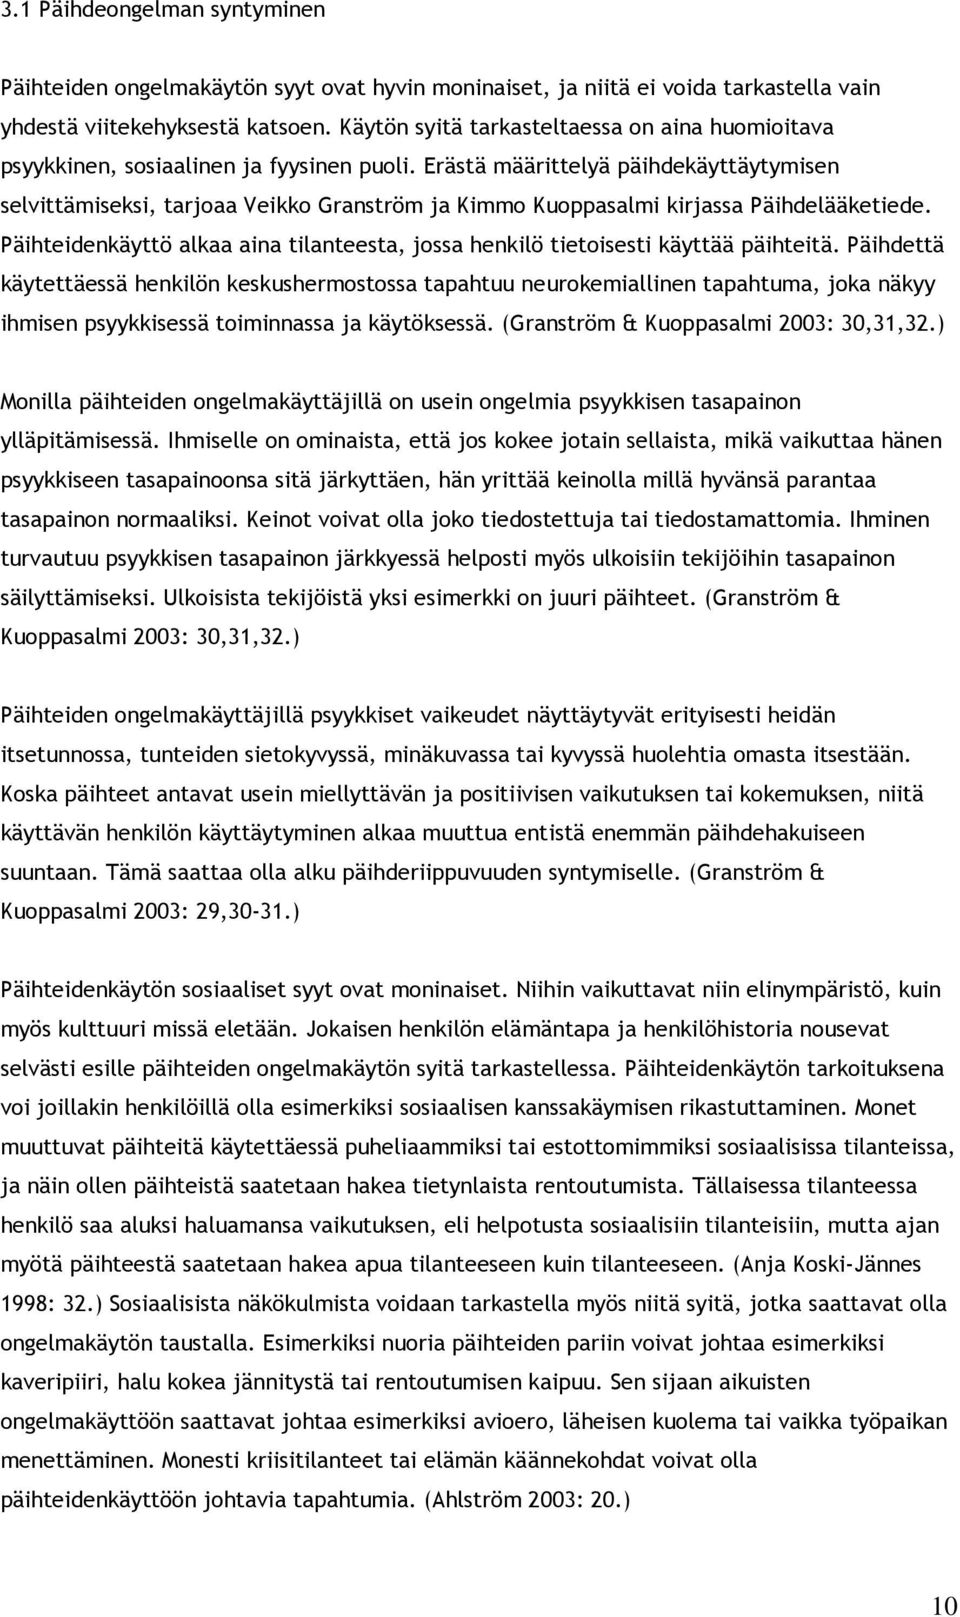 Erästä määrittelyä päihdekäyttäytymisen selvittämiseksi, tarjoaa Veikko Granström ja Kimmo Kuoppasalmi kirjassa Päihdelääketiede.